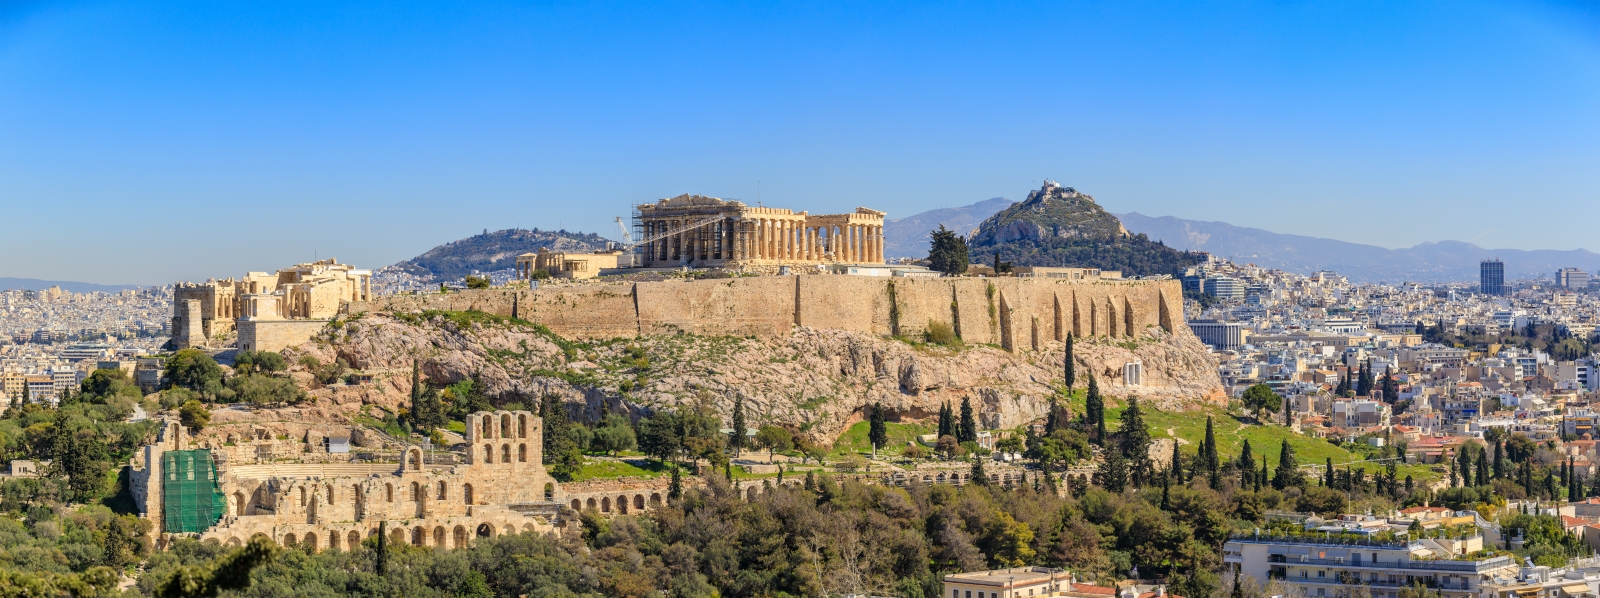 Vue sur le paysage urbain d'Athènes avec l'Acropole